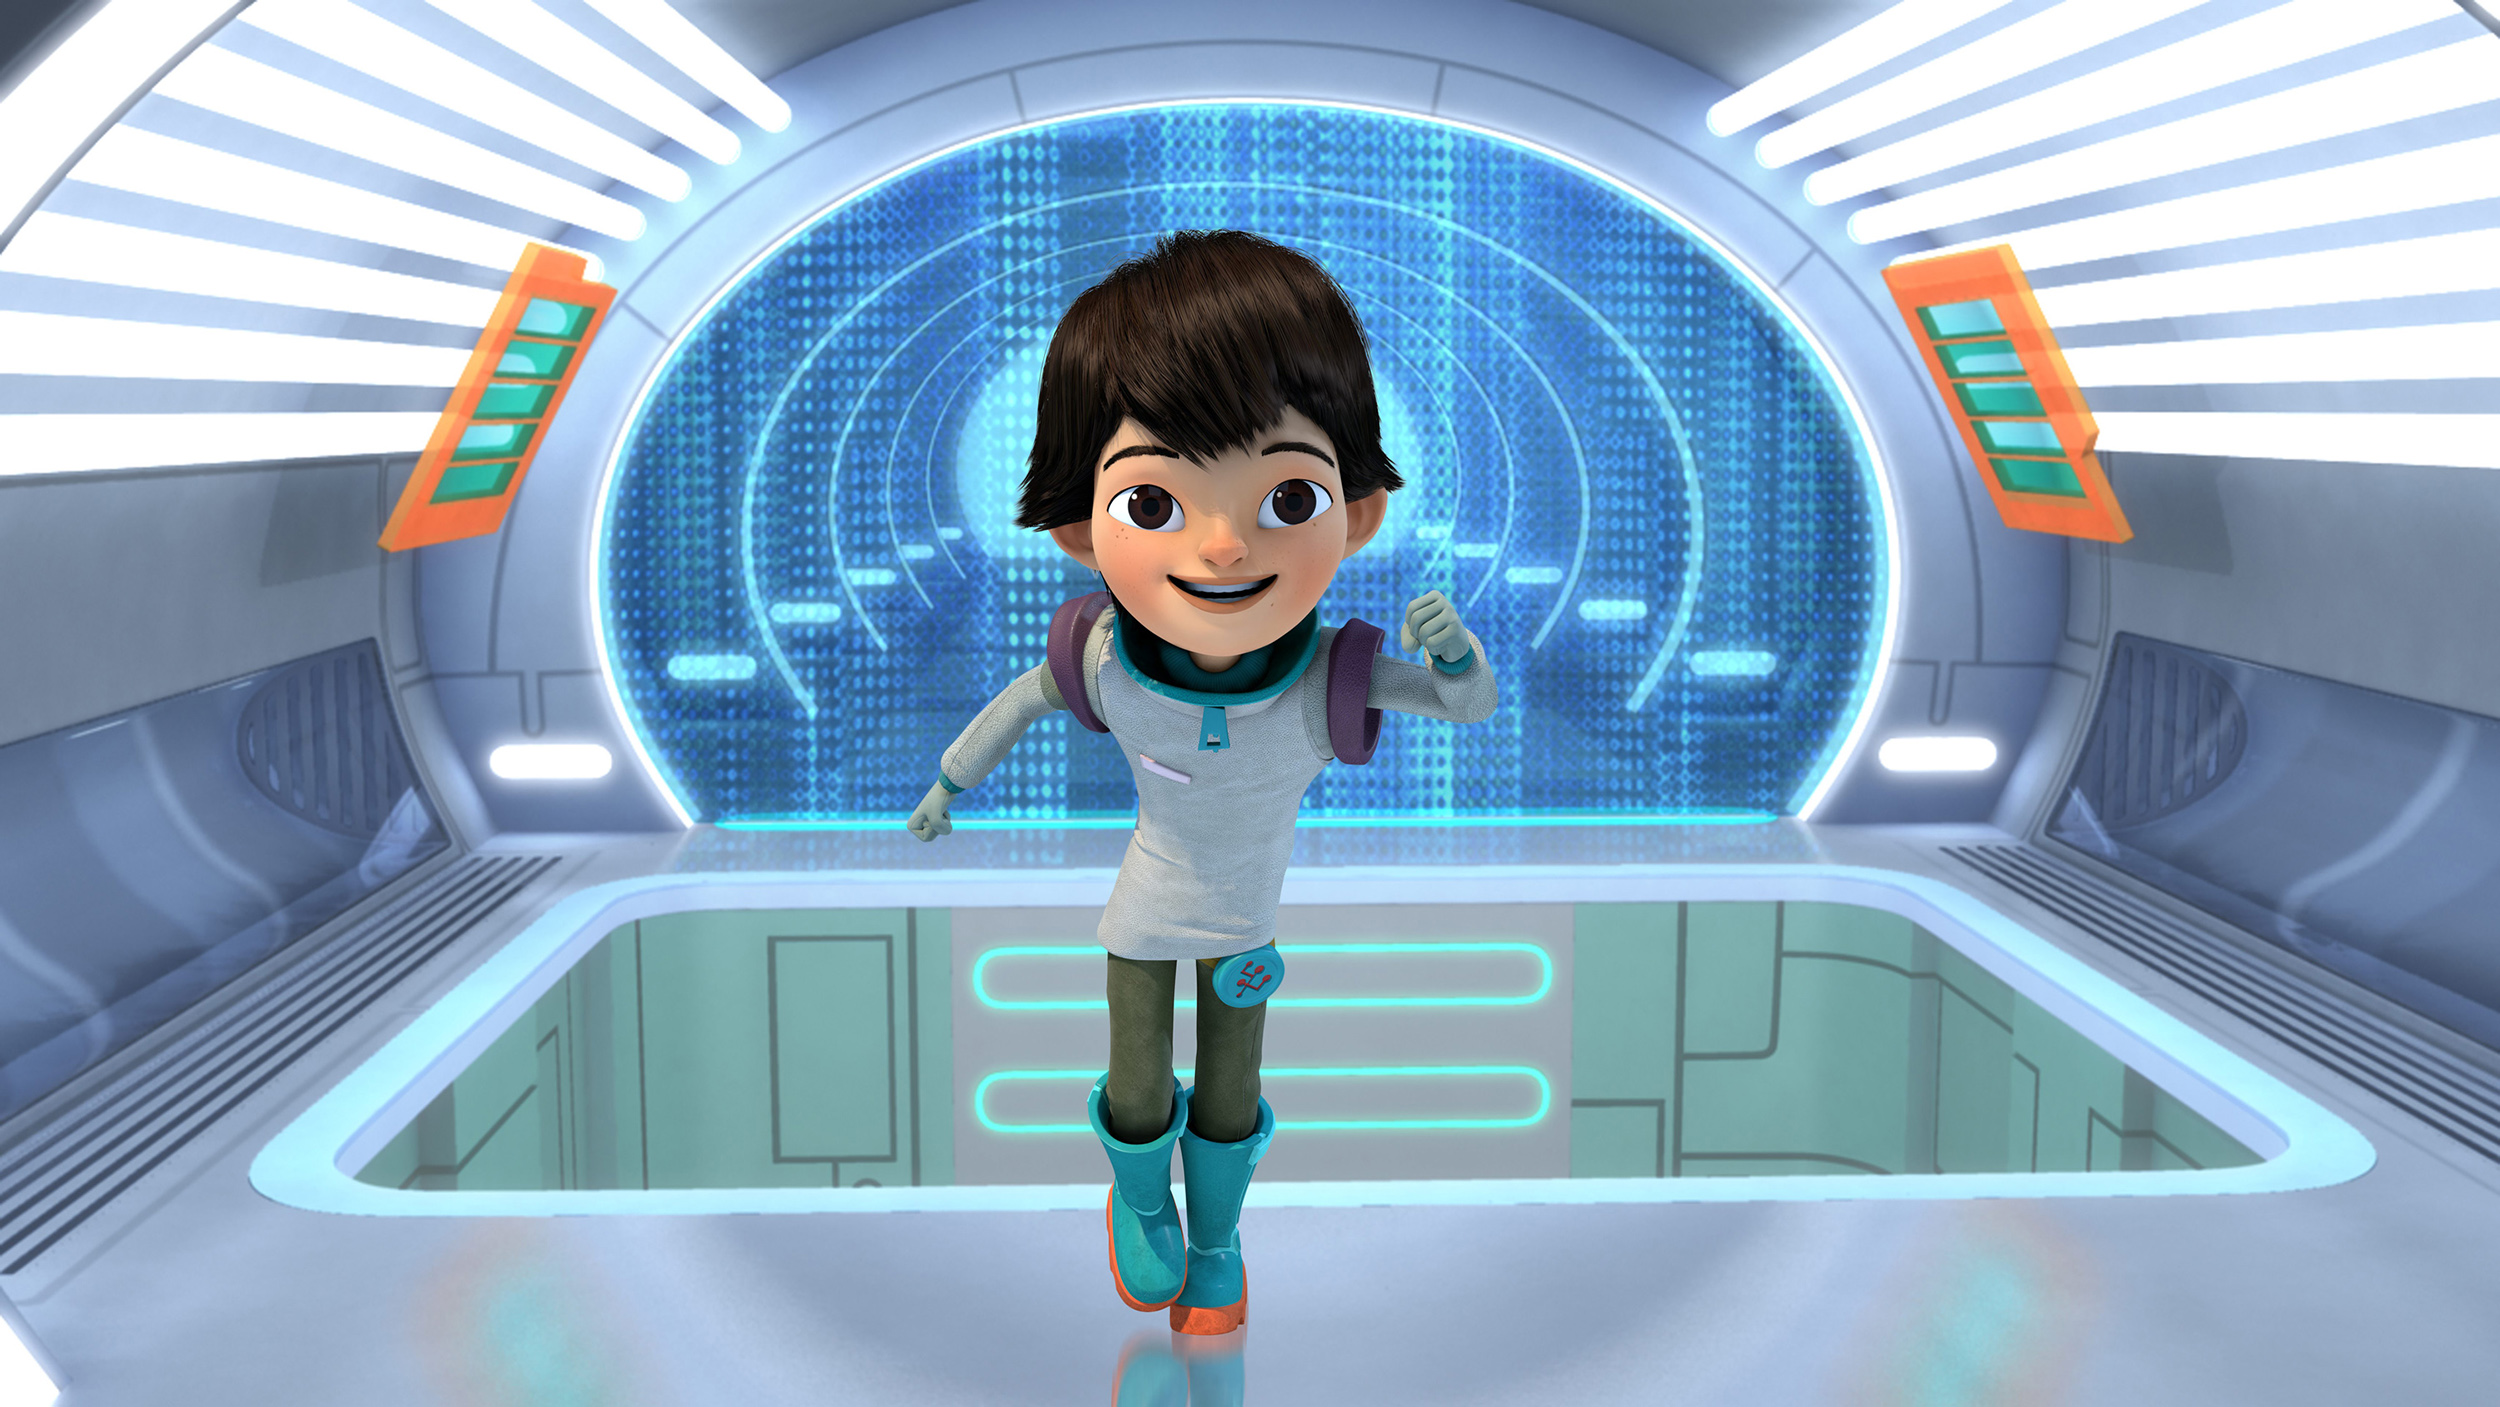 "Miles in spatiu", un nou serial animat de aventuri intergalactice pentru copii, debuteaza sambata, 23 mai, la ora 10:55, la Disney Junior.